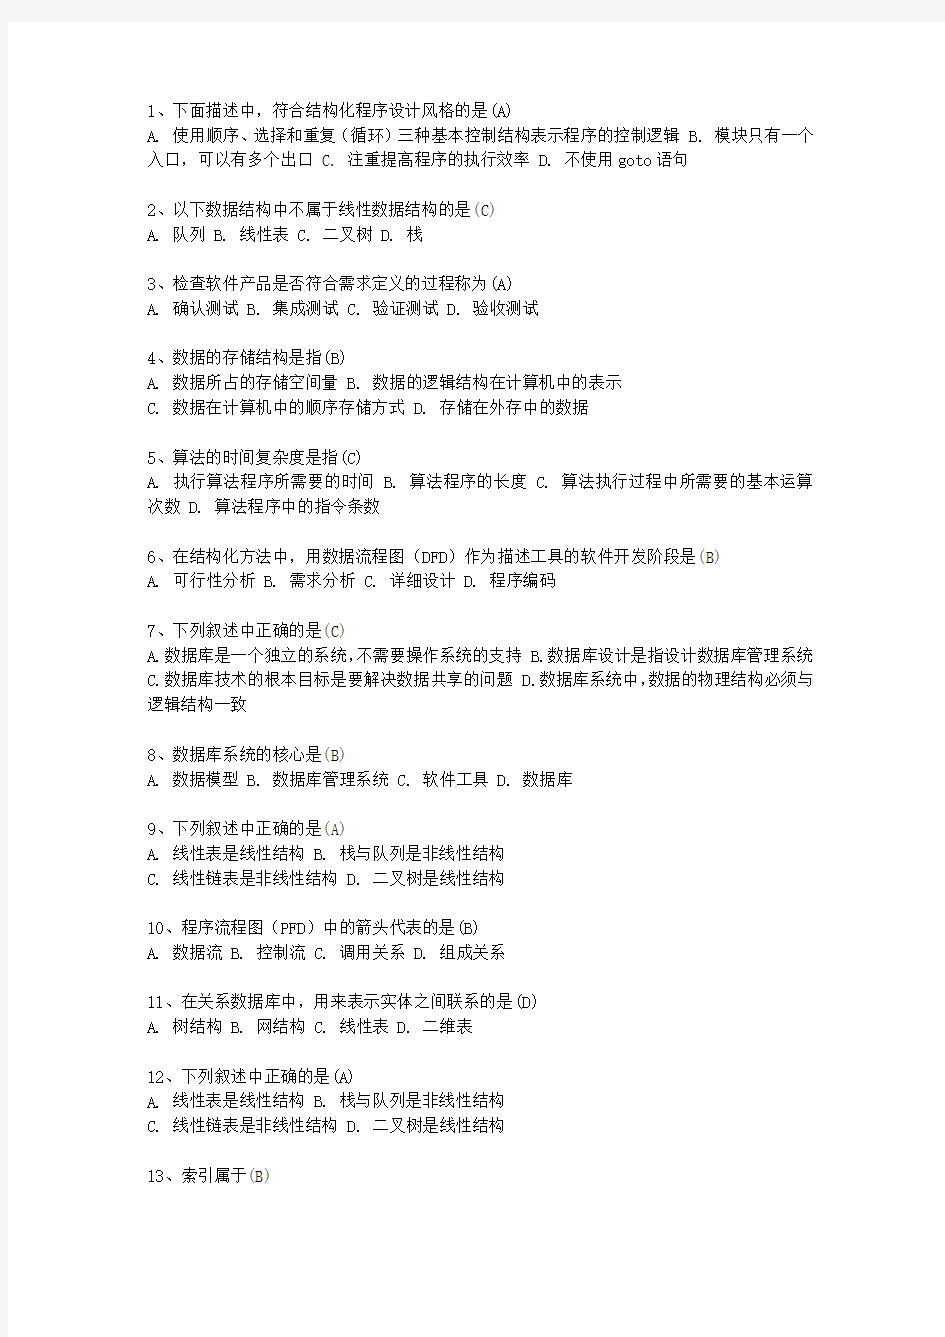 2011贵州省计算机等级考试试题 二级ACCESS考试答题技巧